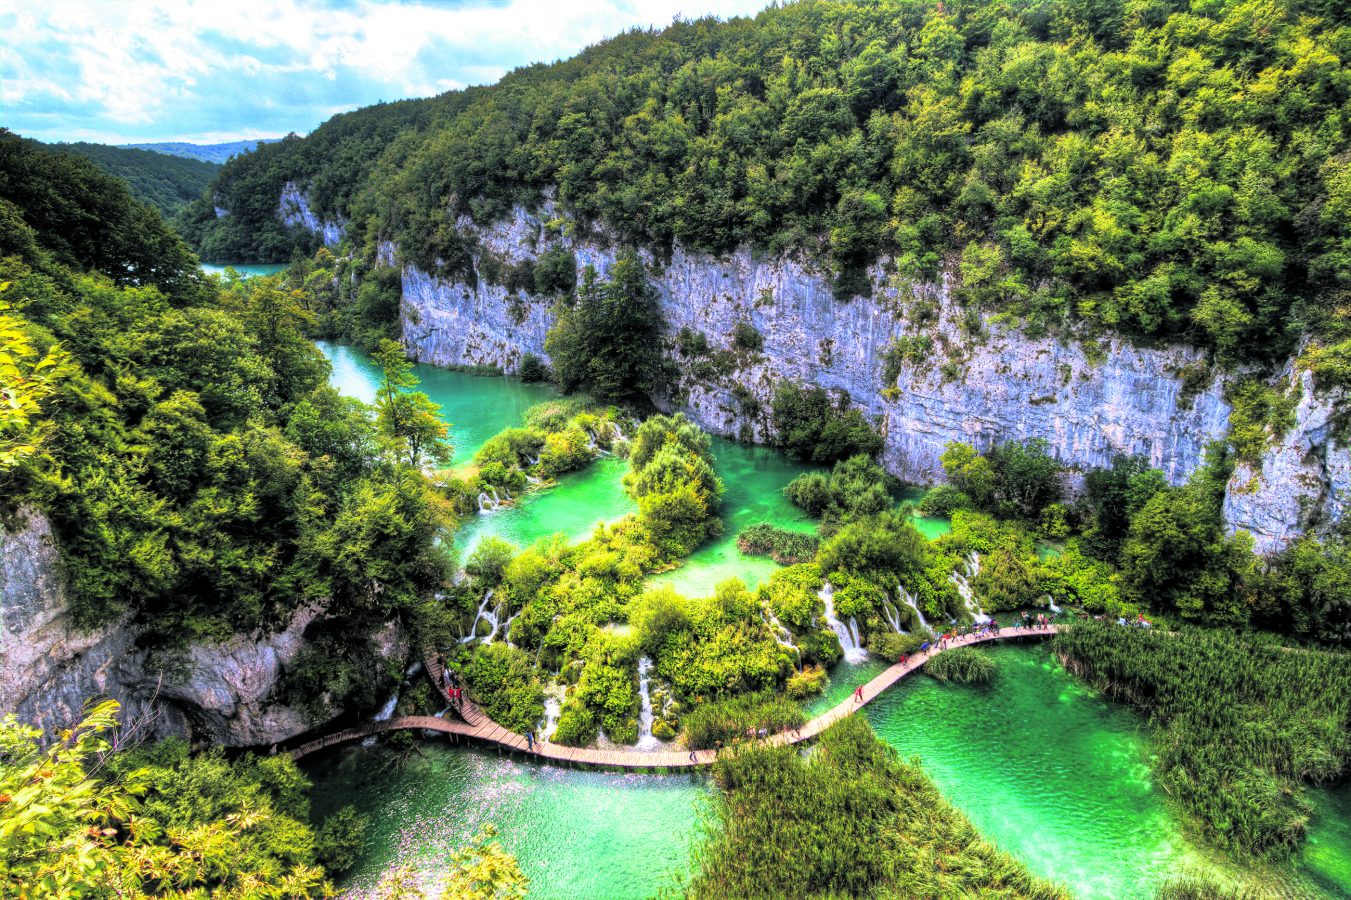 Plitvice, 1949 yılında milli park statüsü kazanmış ve 1979 yılında UNESCO’nun Dünya Mirası Listesi’ne girmiş.